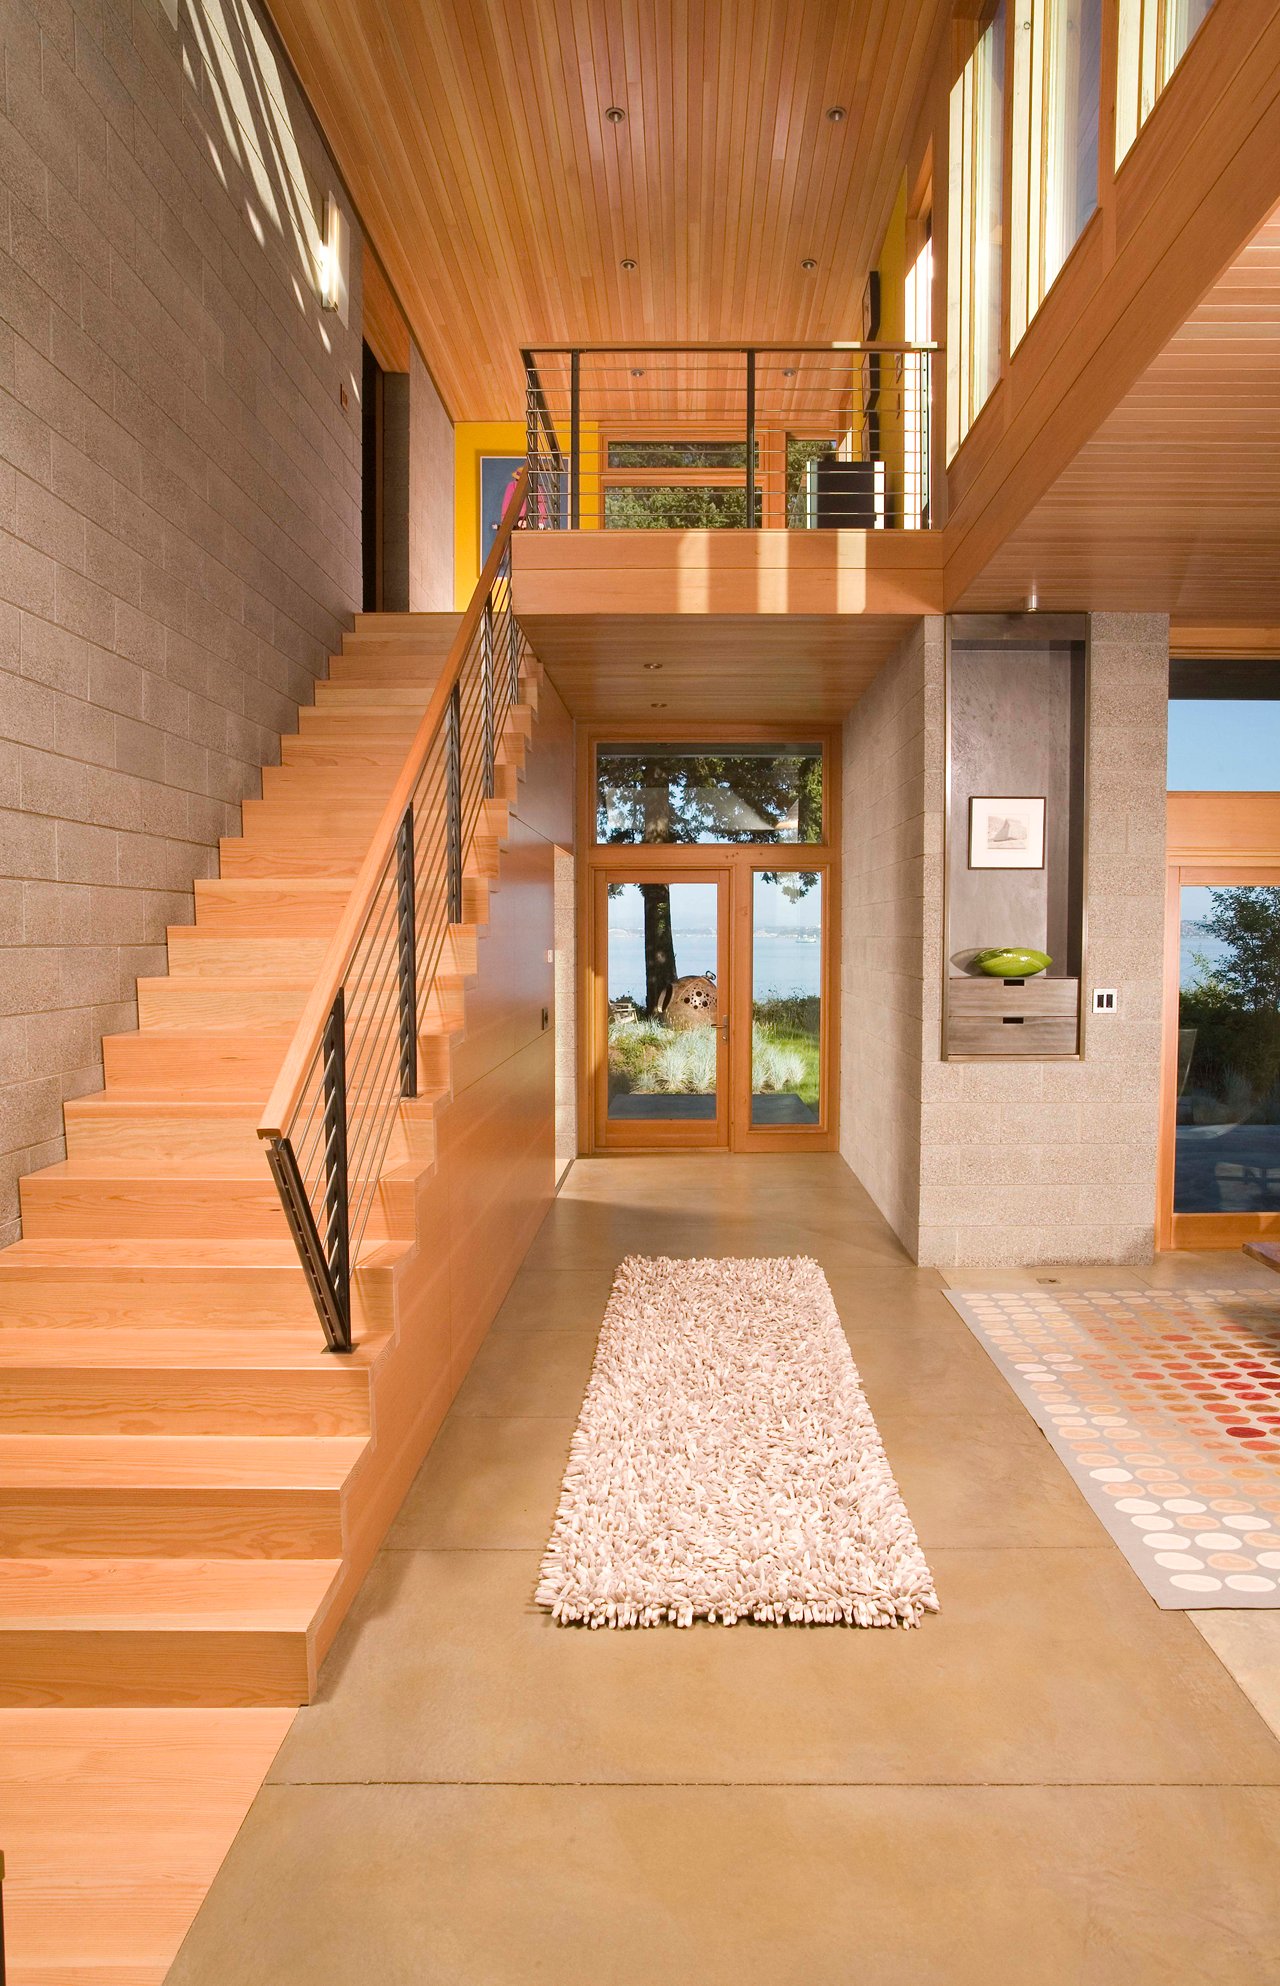 这个可爱、温暖的入口右侧有一个主要的起居区，左侧有一个楼梯，前方的短走廊通往后院。入口是温暖的木材和中性的石材瓷砖的组合。